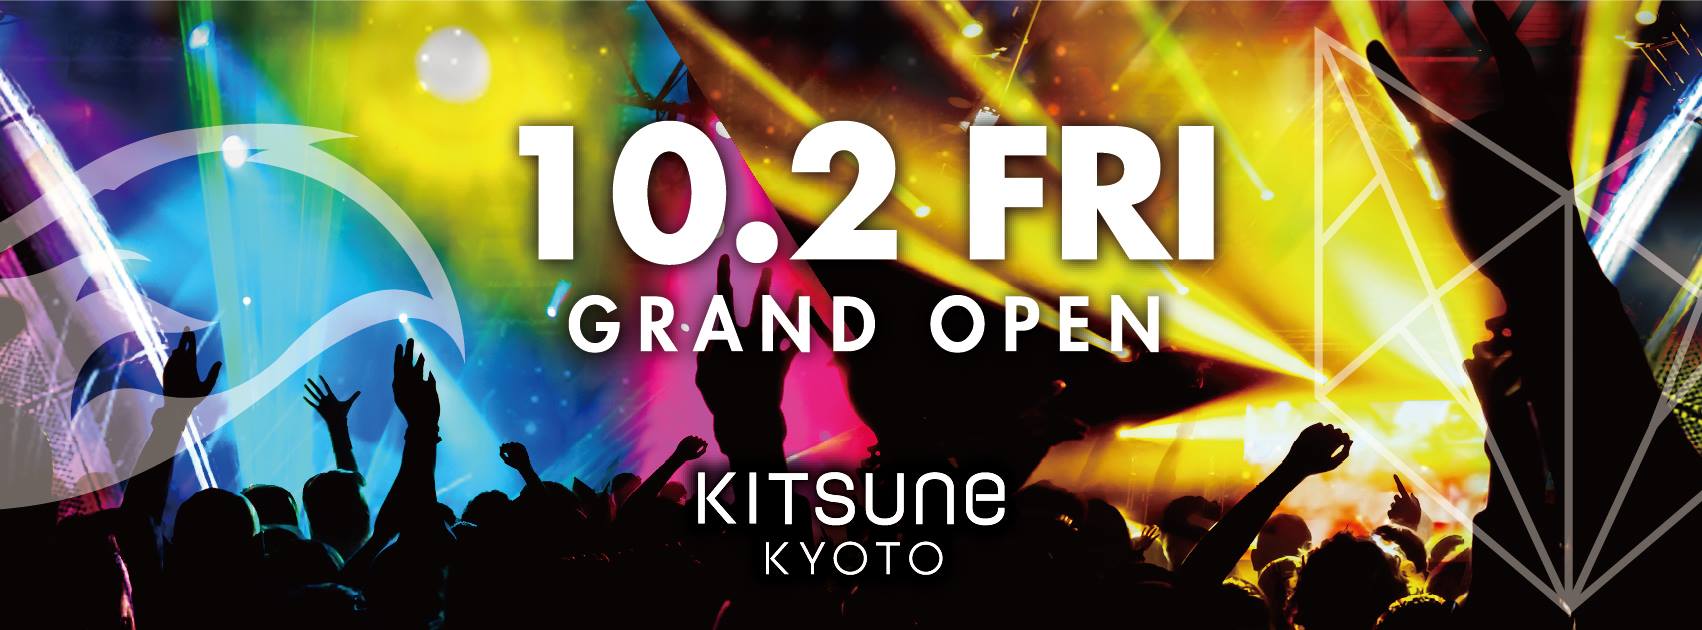 KITSUNE KYOTO open